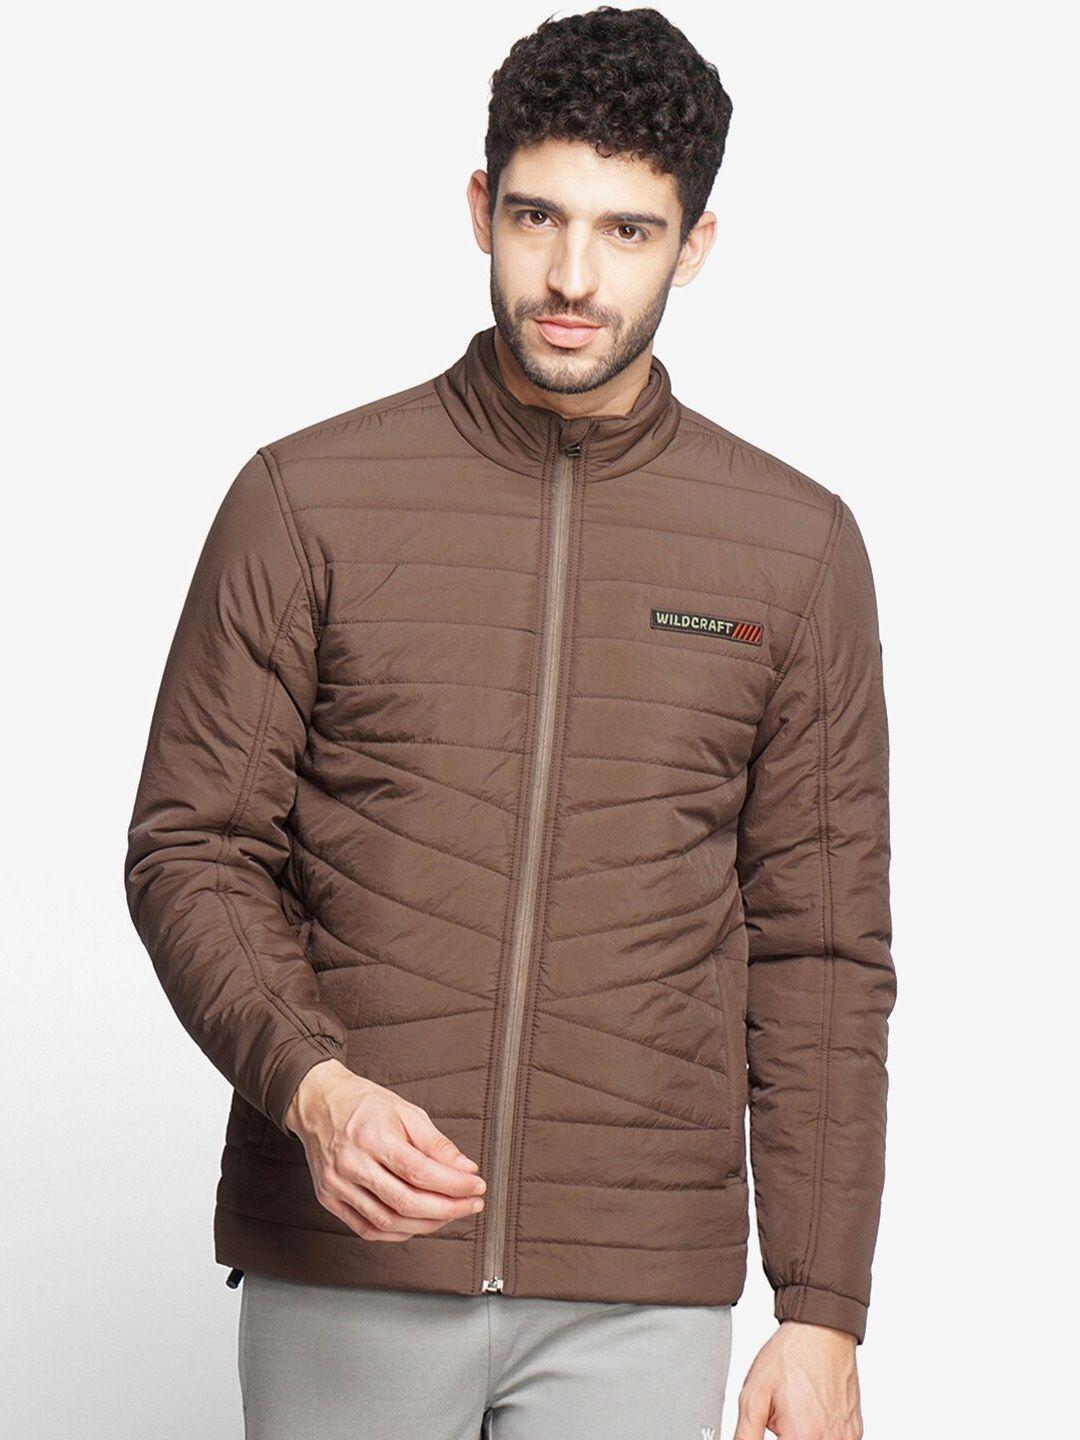 wildcraft men brown water resistant quilted jacket